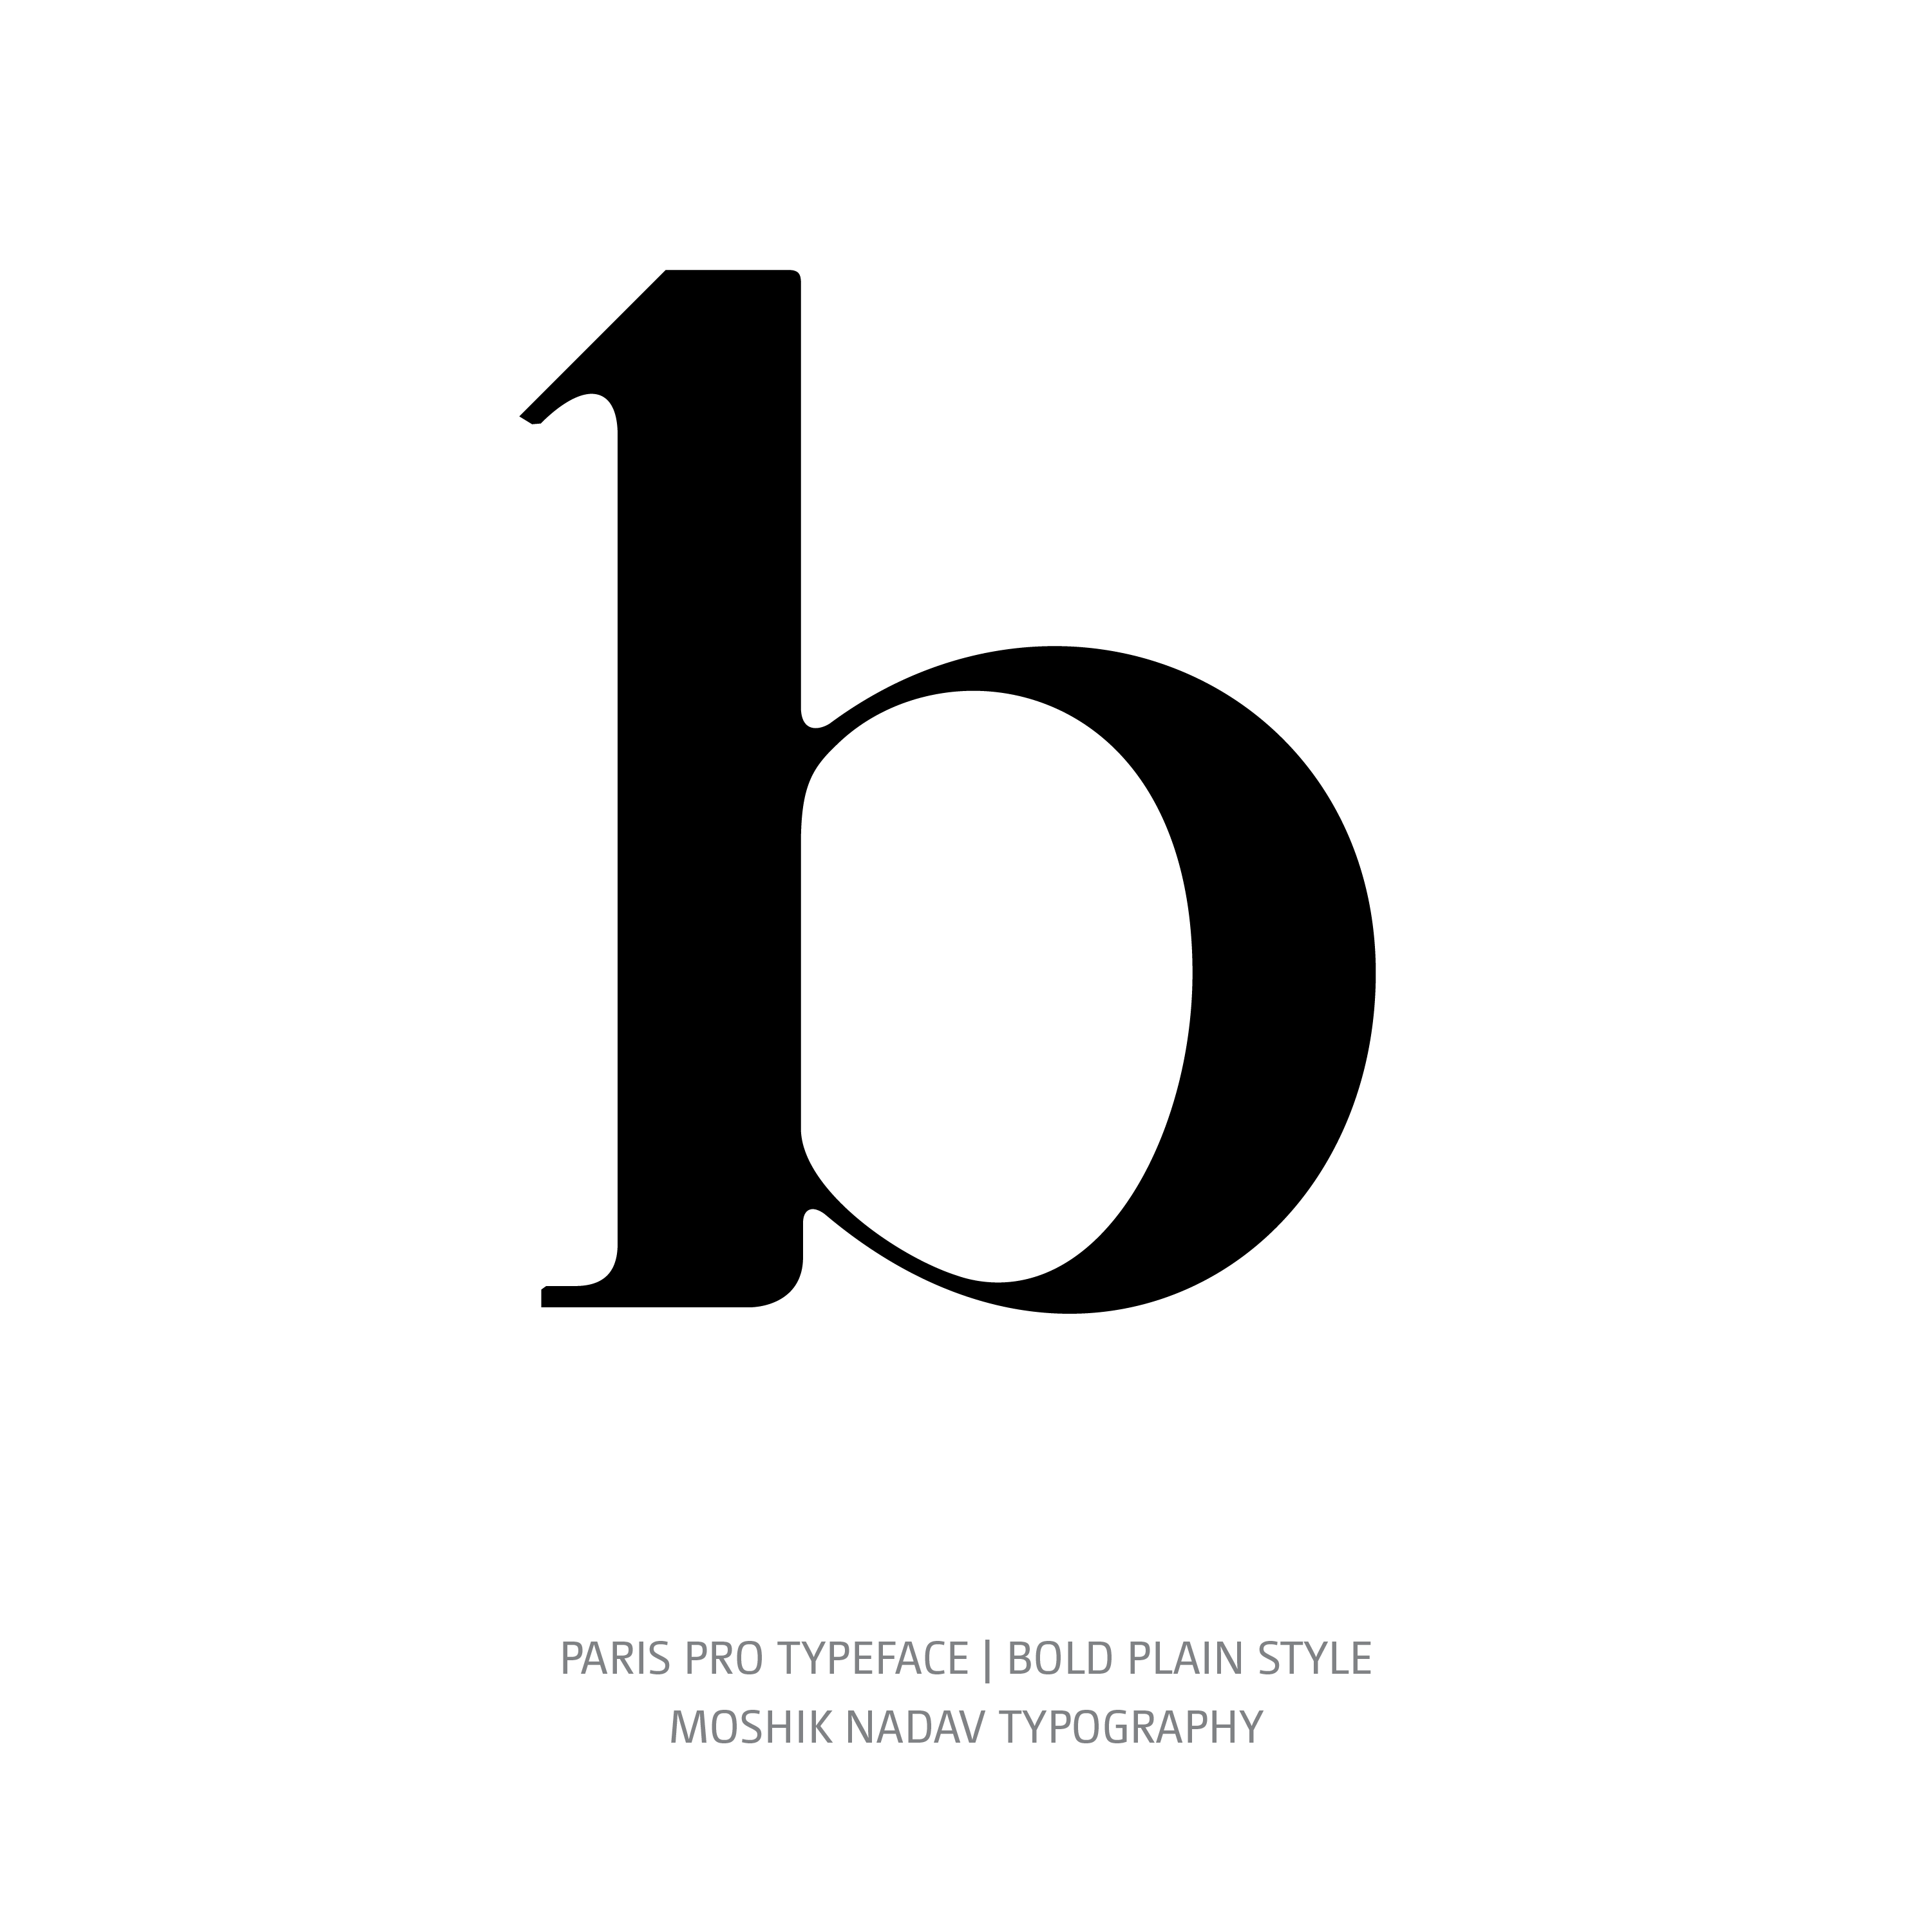 Paris Pro Typeface Bold Plain b